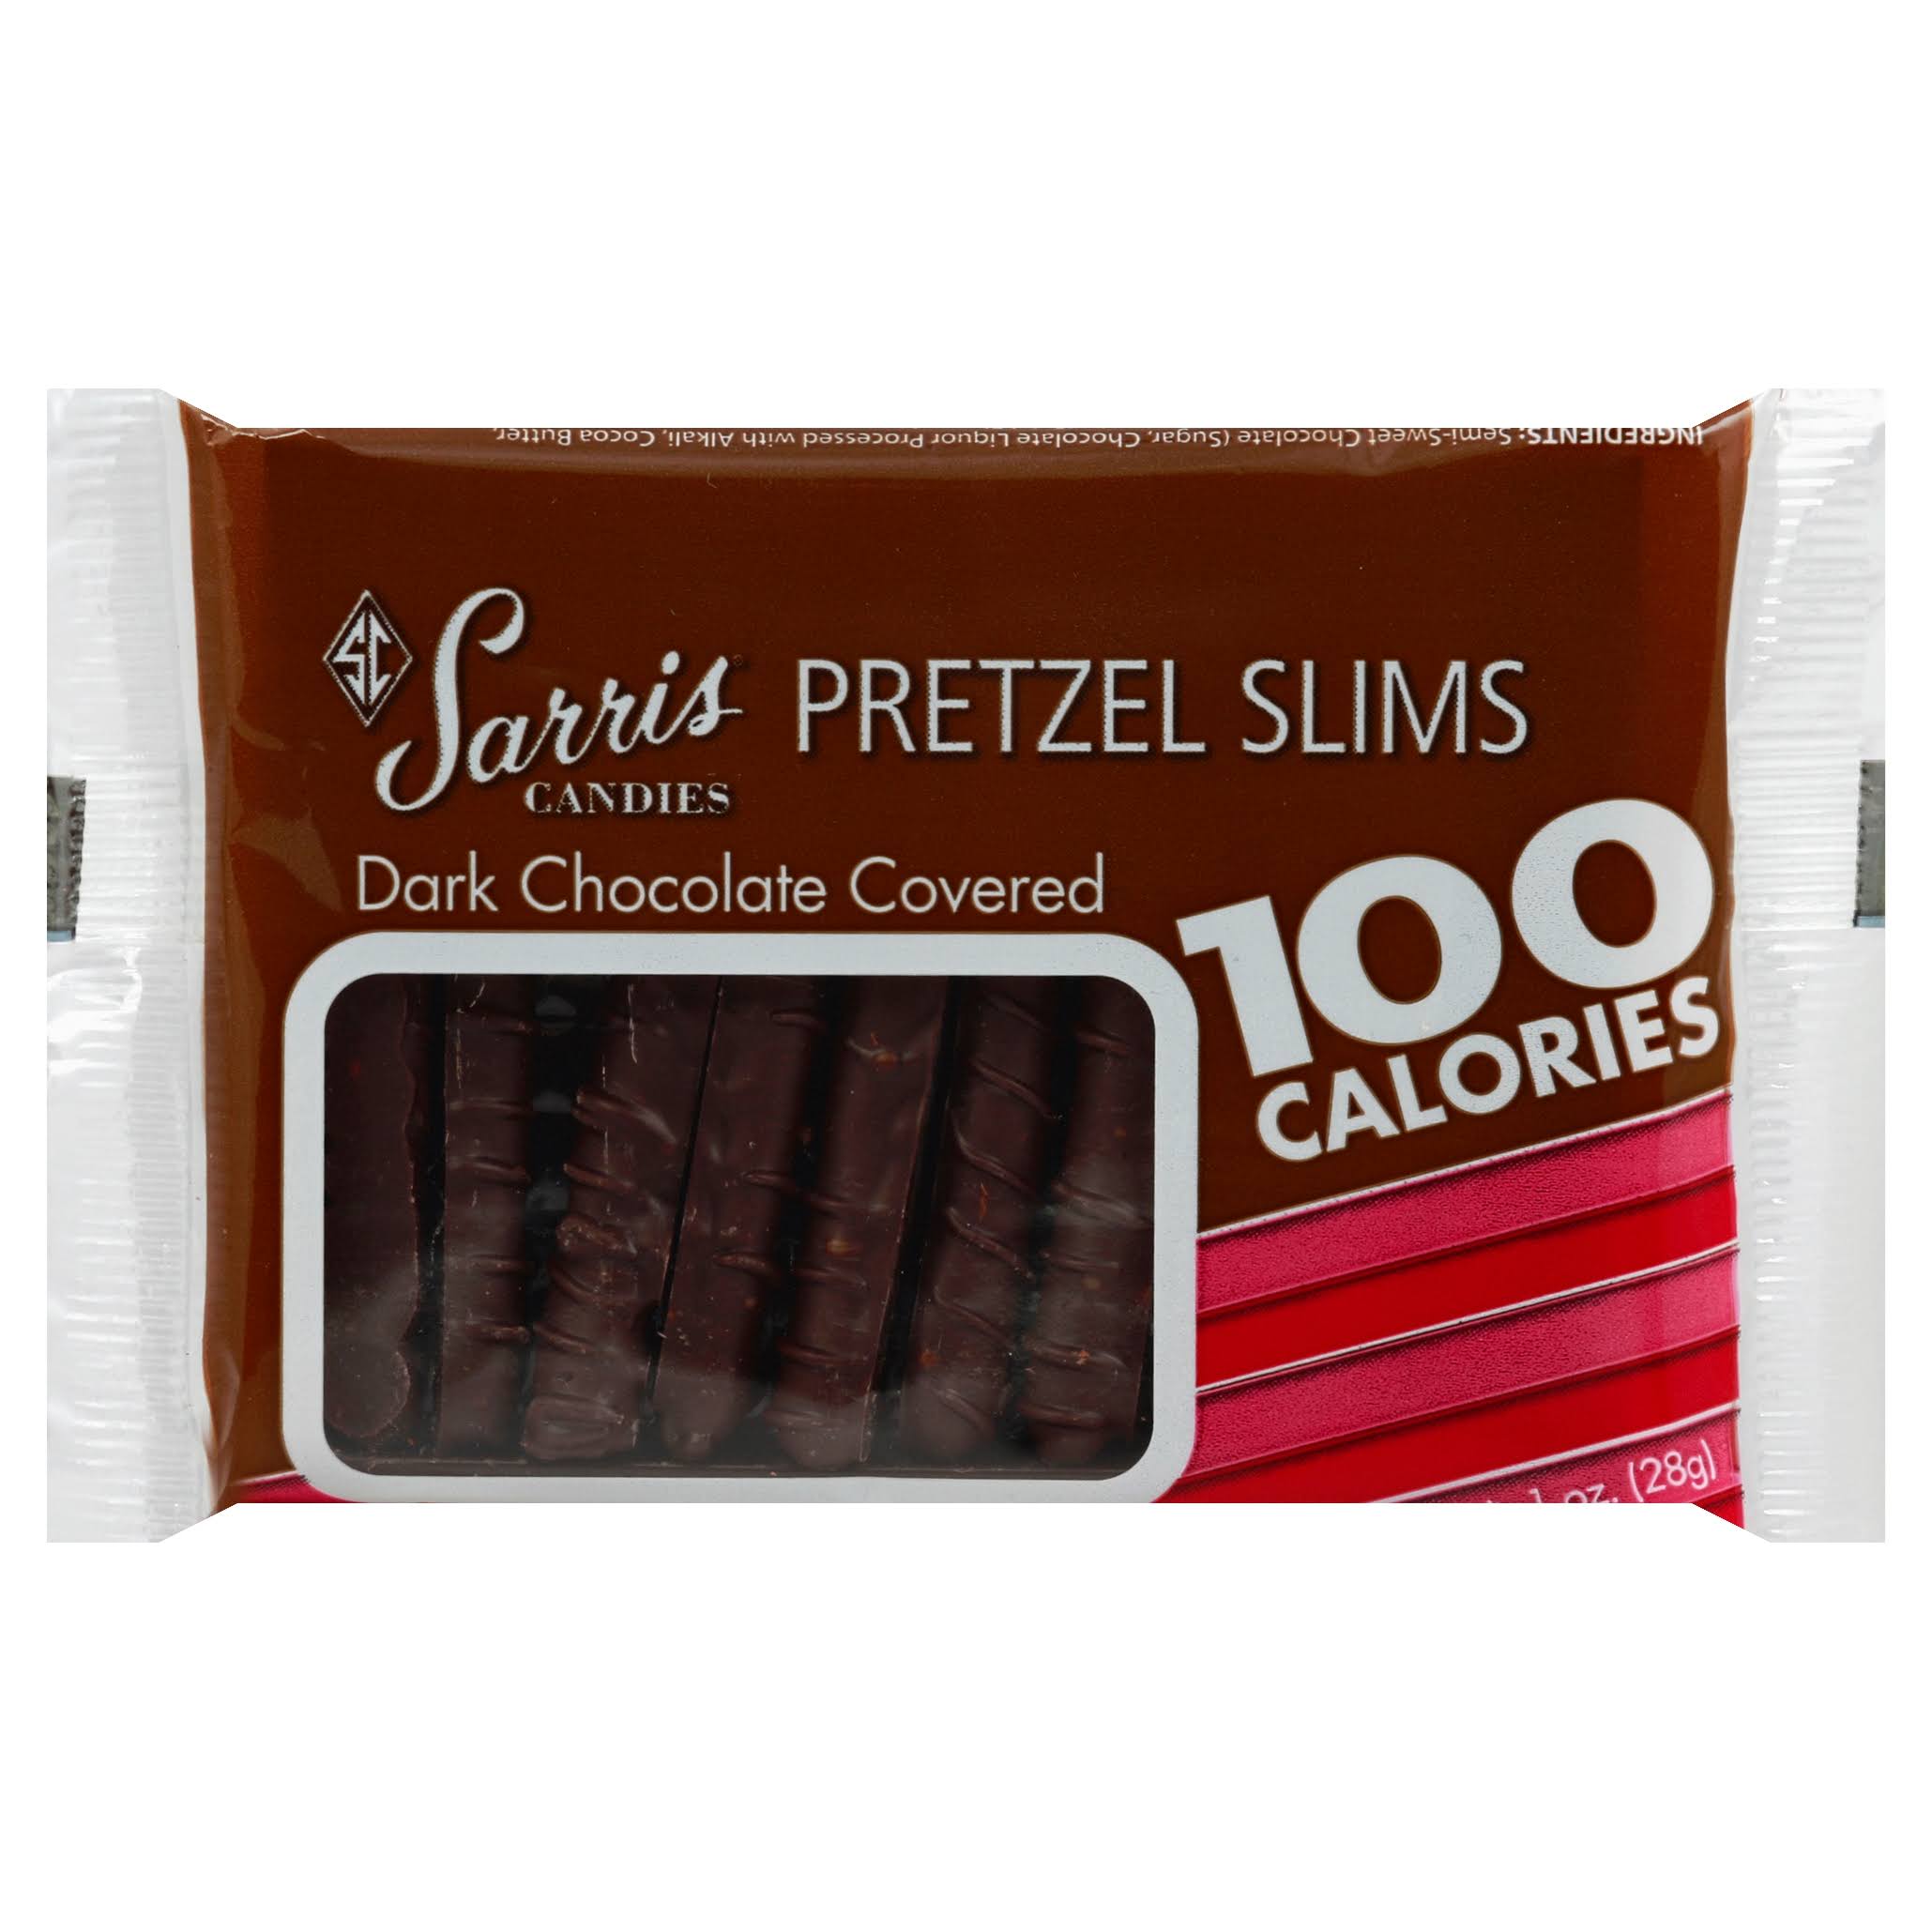 Sarris Candies Pretzel Slims, Dark Chocolate Covered - 1 oz